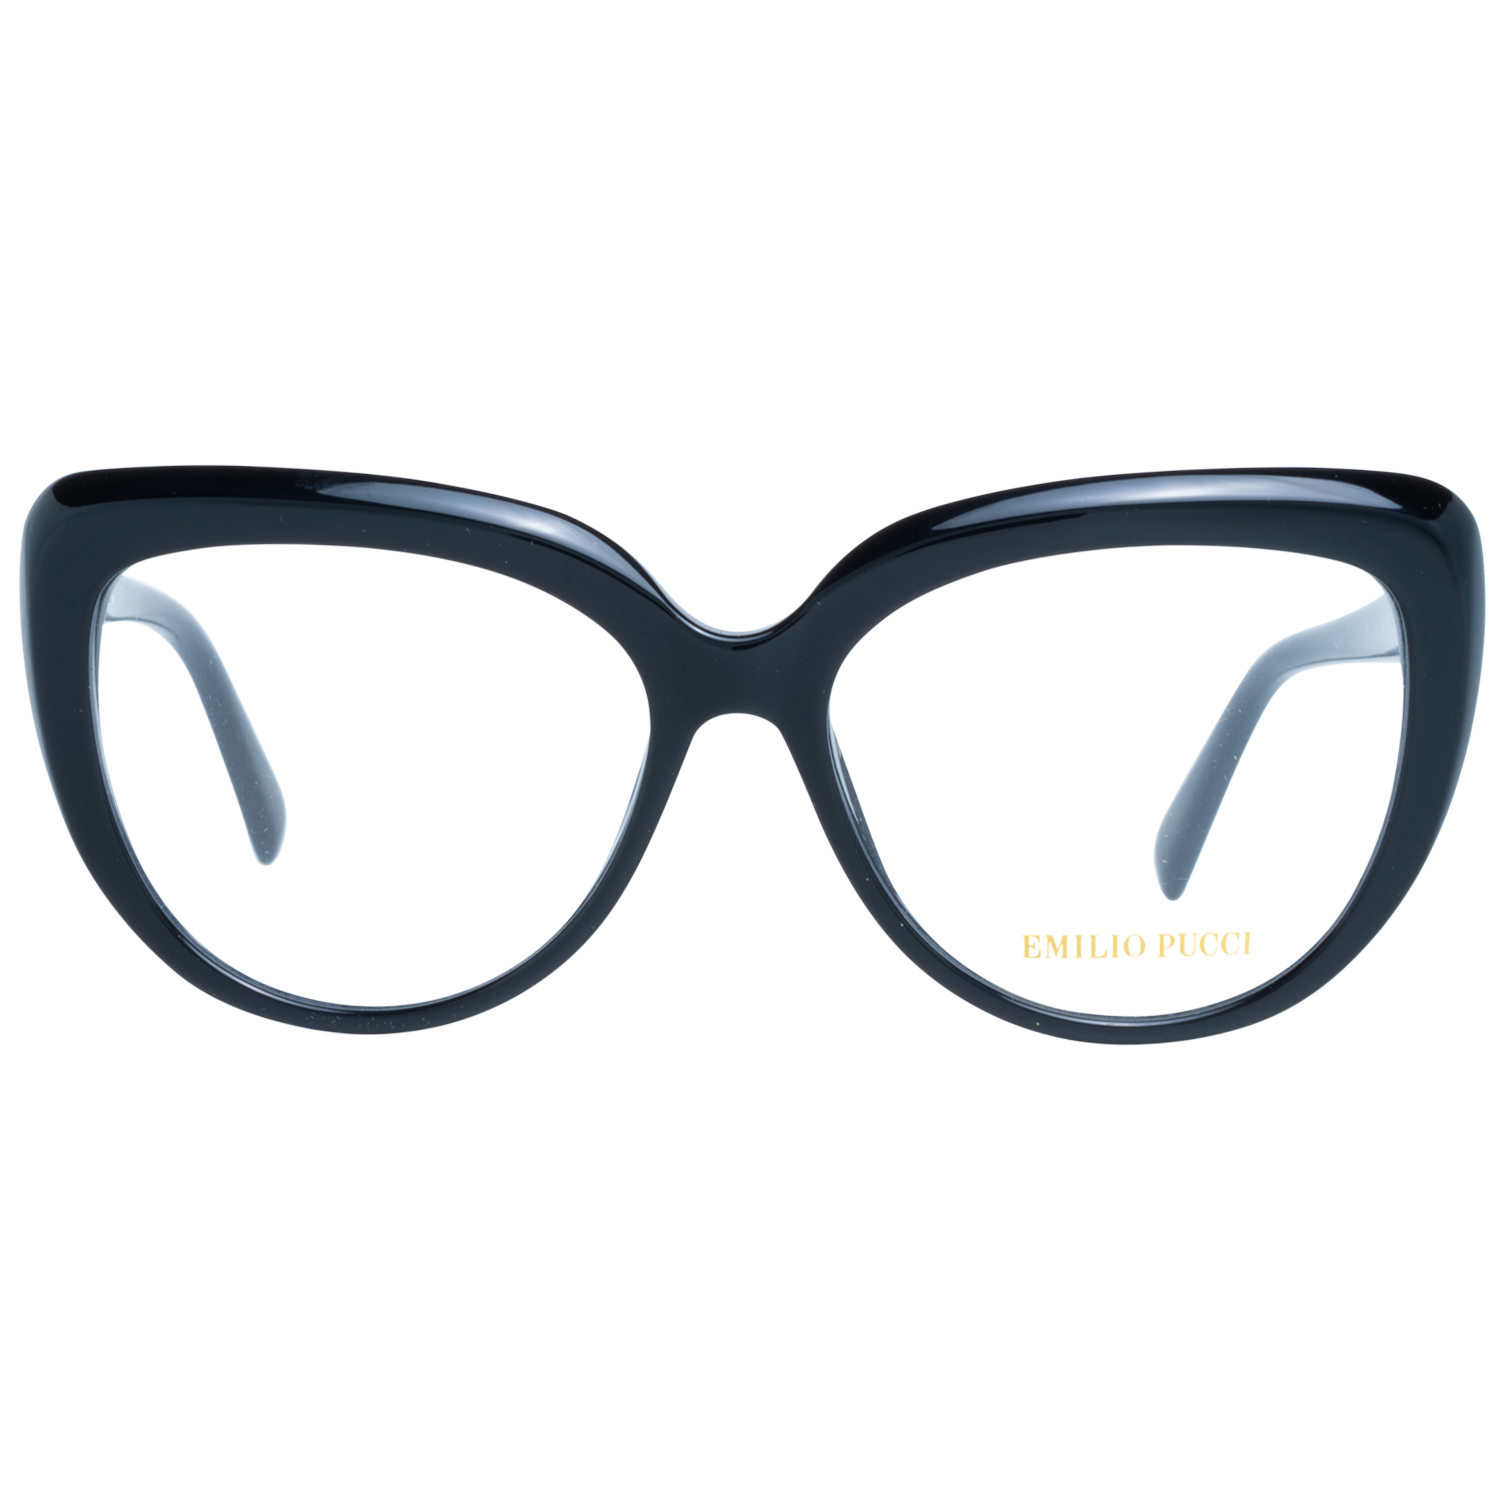 Emilio Pucci Frames Emilio Pucci Optical Frame EP5173 001 54 Eyeglasses Eyewear UK USA Australia 